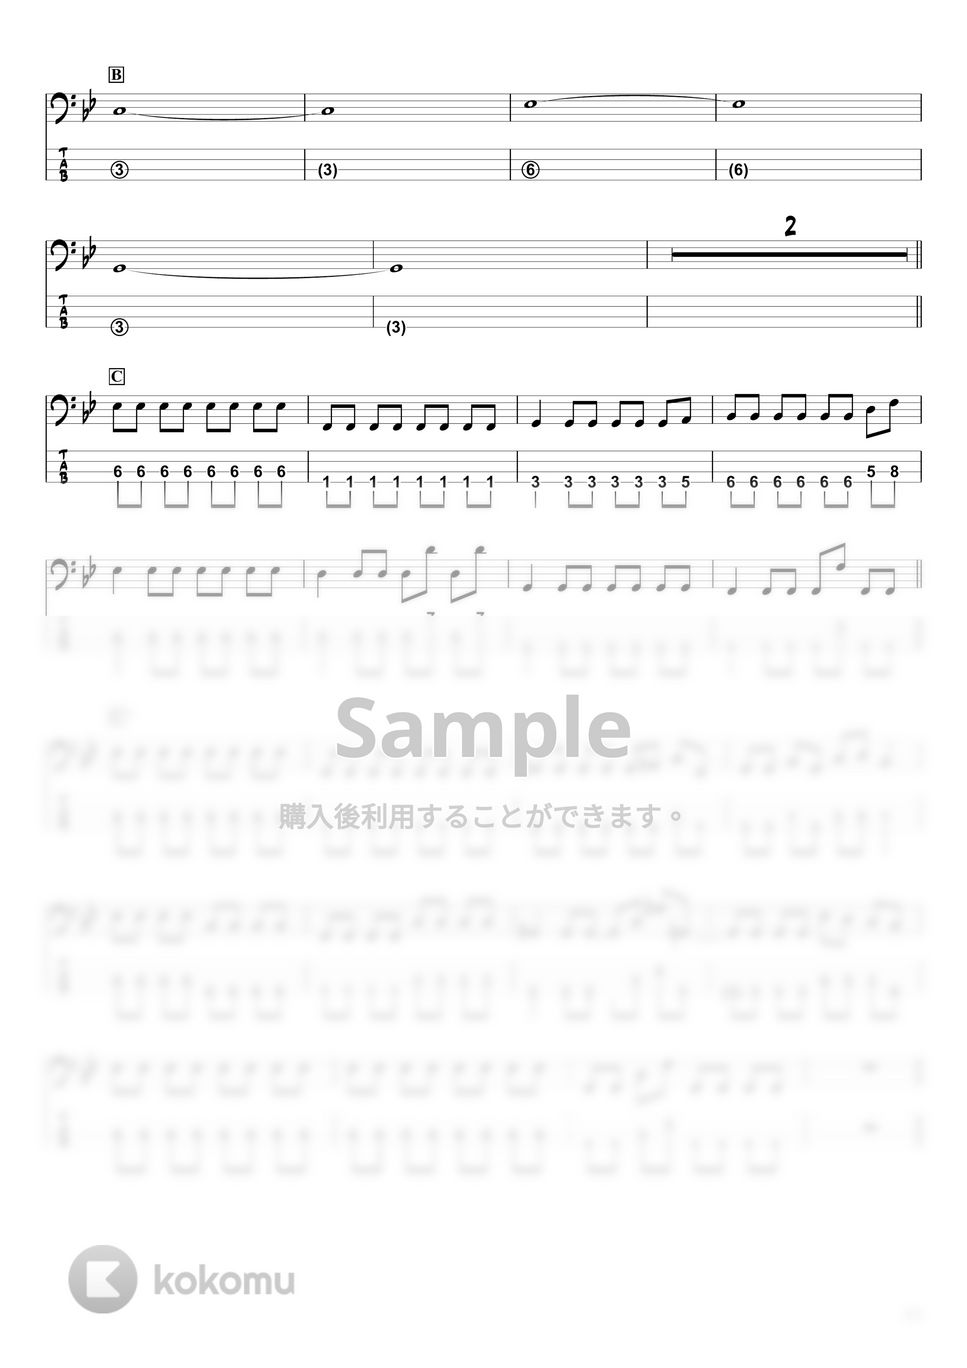 ＭＡＮ　ＷＩＴＨ　Ａ　ＭＩＳＳＩＯＮ　×　ｍｉｌｅｔ - 絆ノ奇跡 (ベースTAB譜☆4弦ベース対応) by swbass